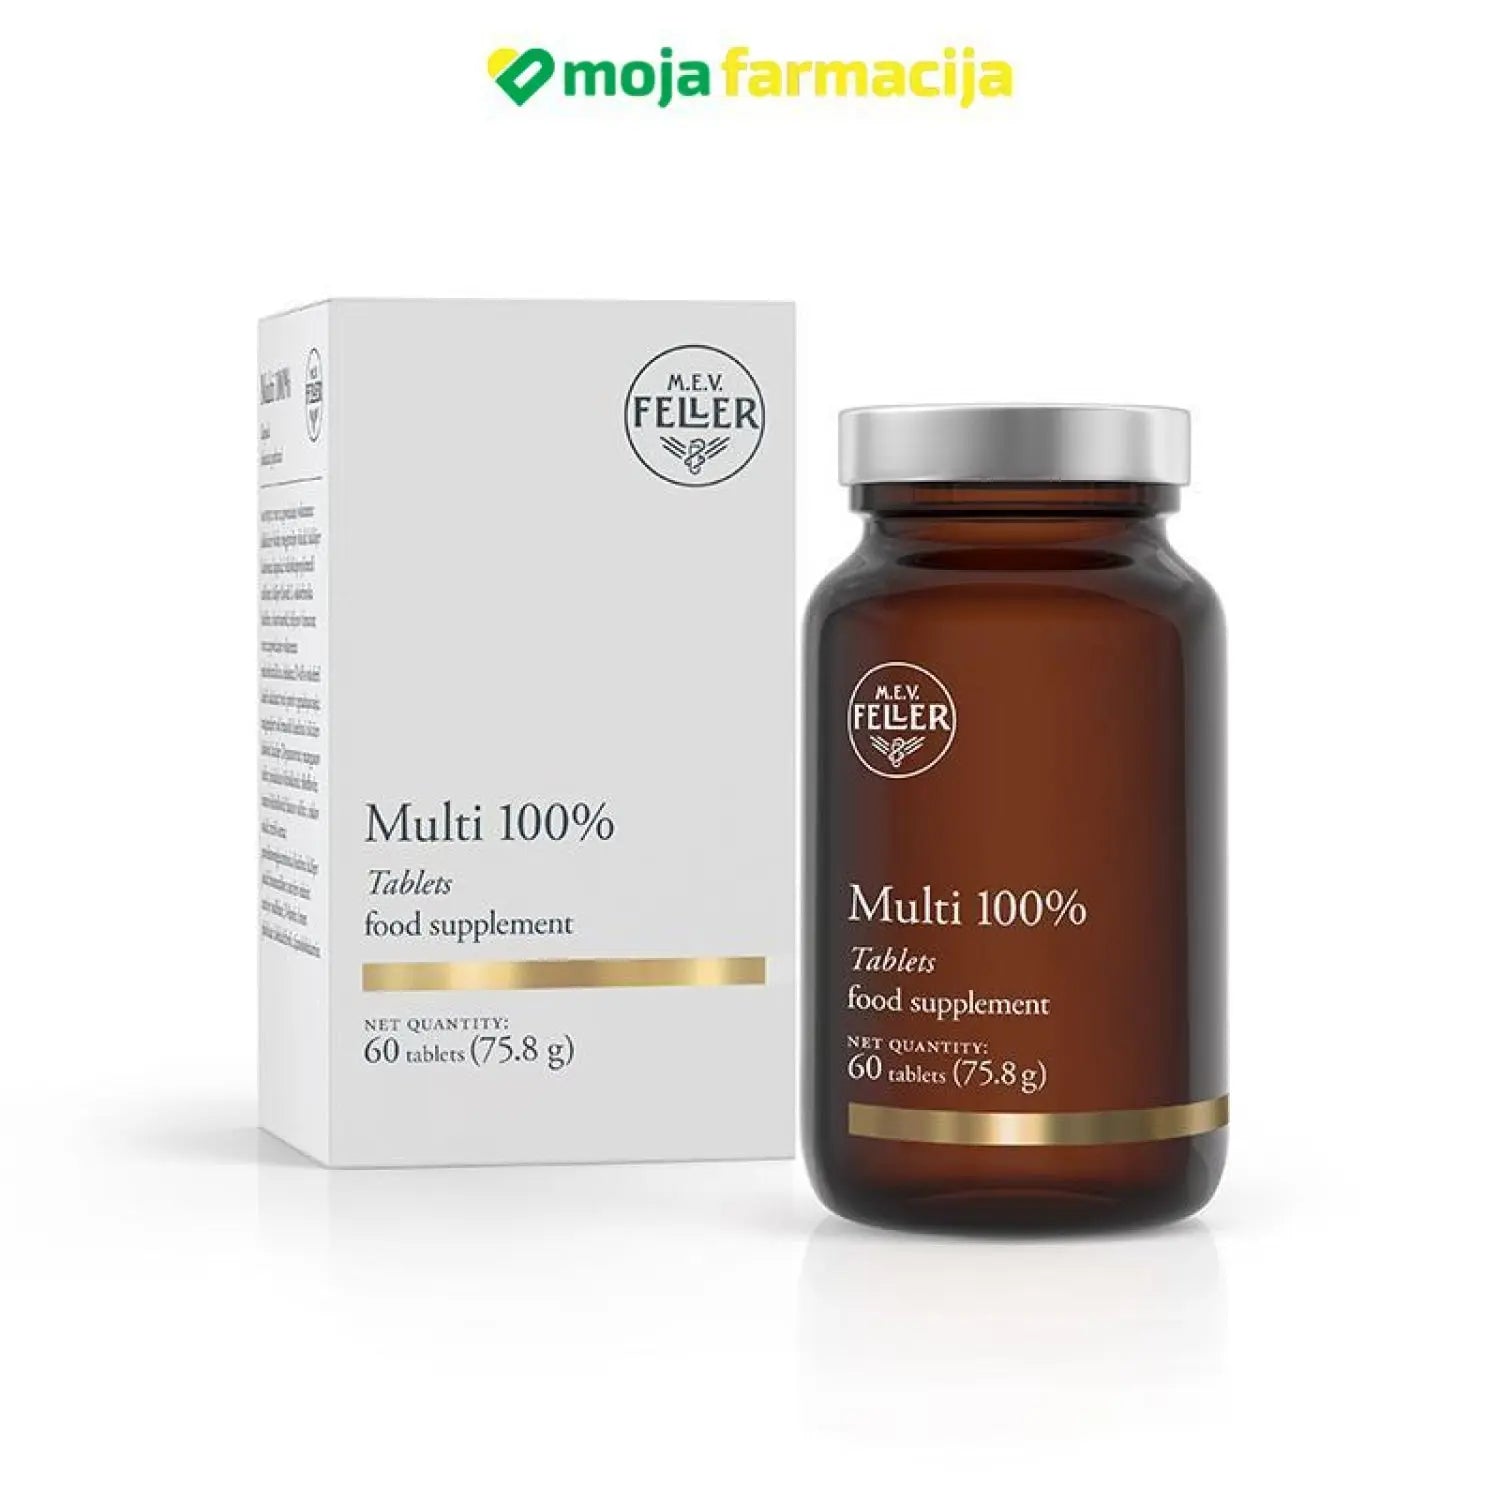 Slika proizvoda M.E.V. FELLER Multi 100% iz online apoteke Moja Farmacija - BIH